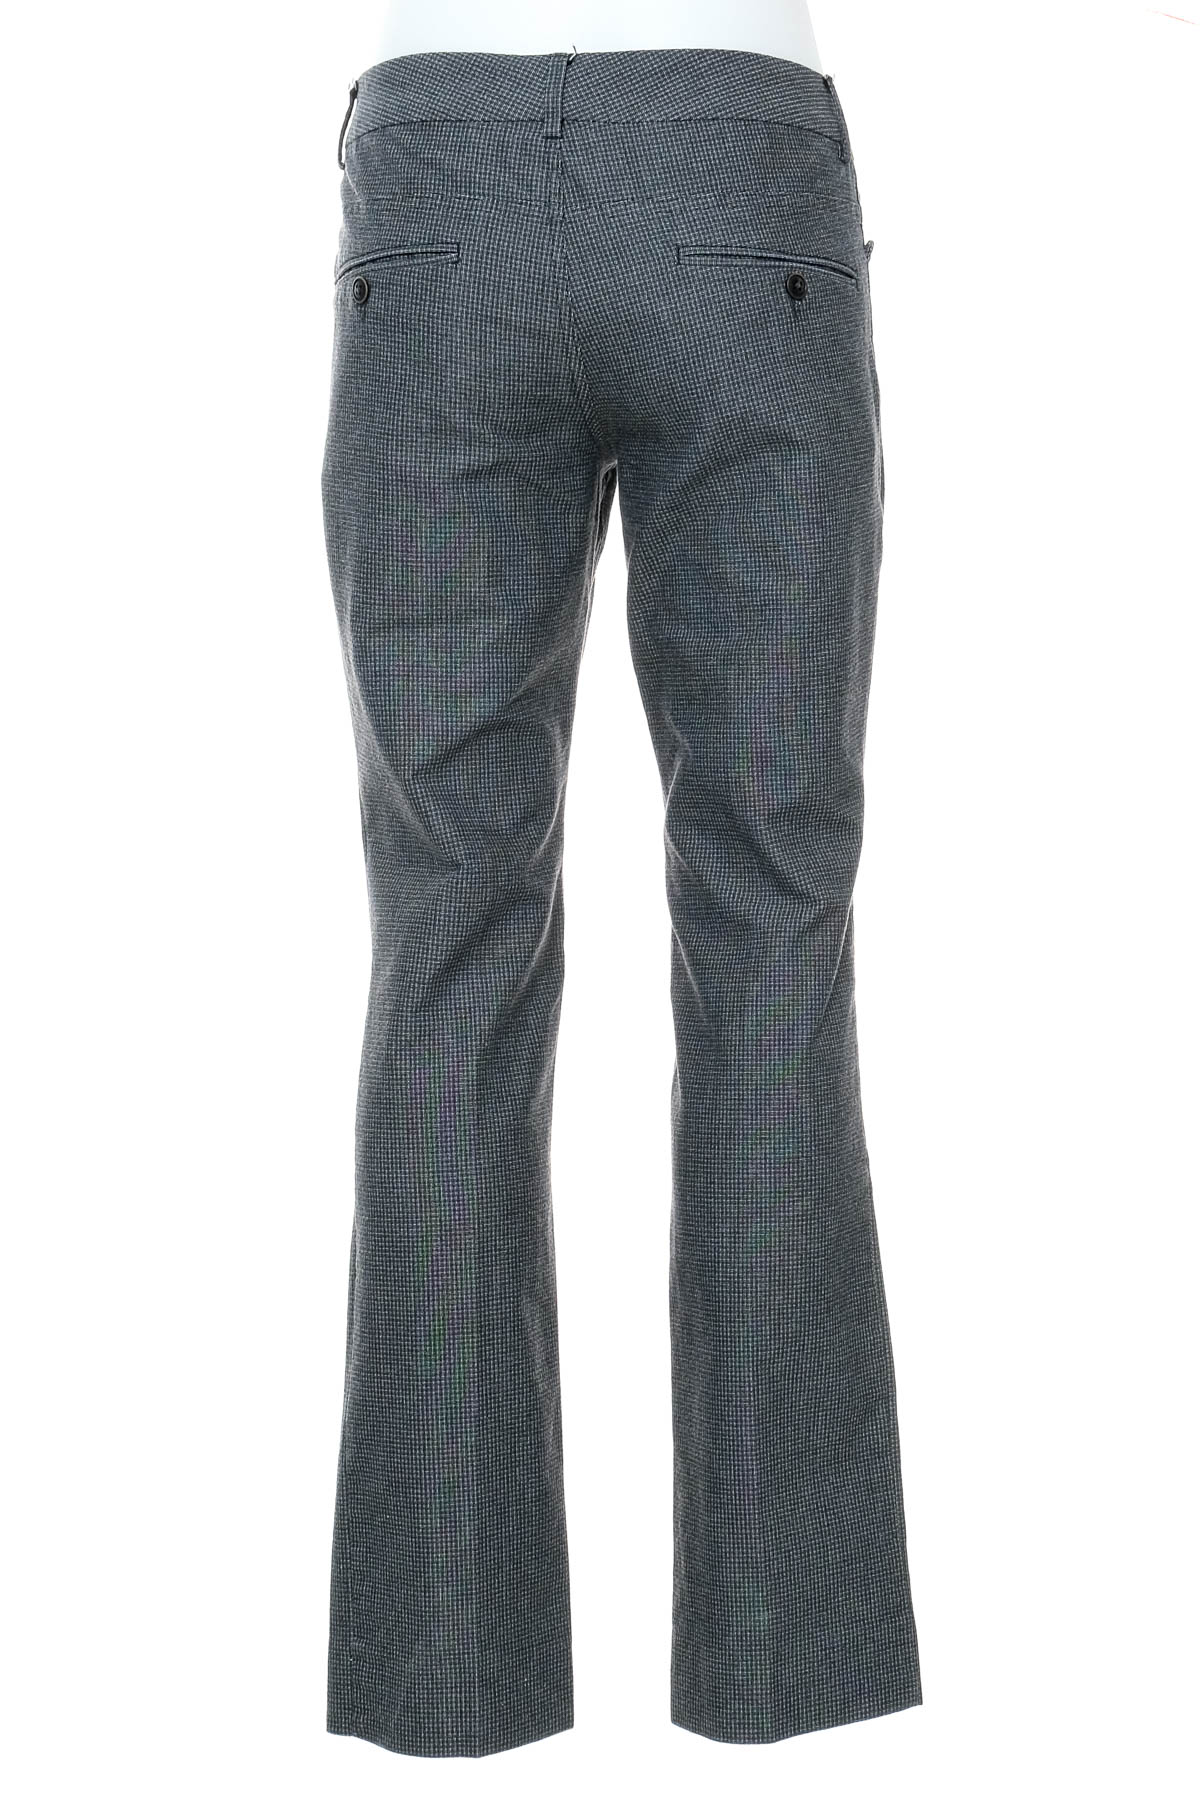 Men's trousers - MEXX - 1